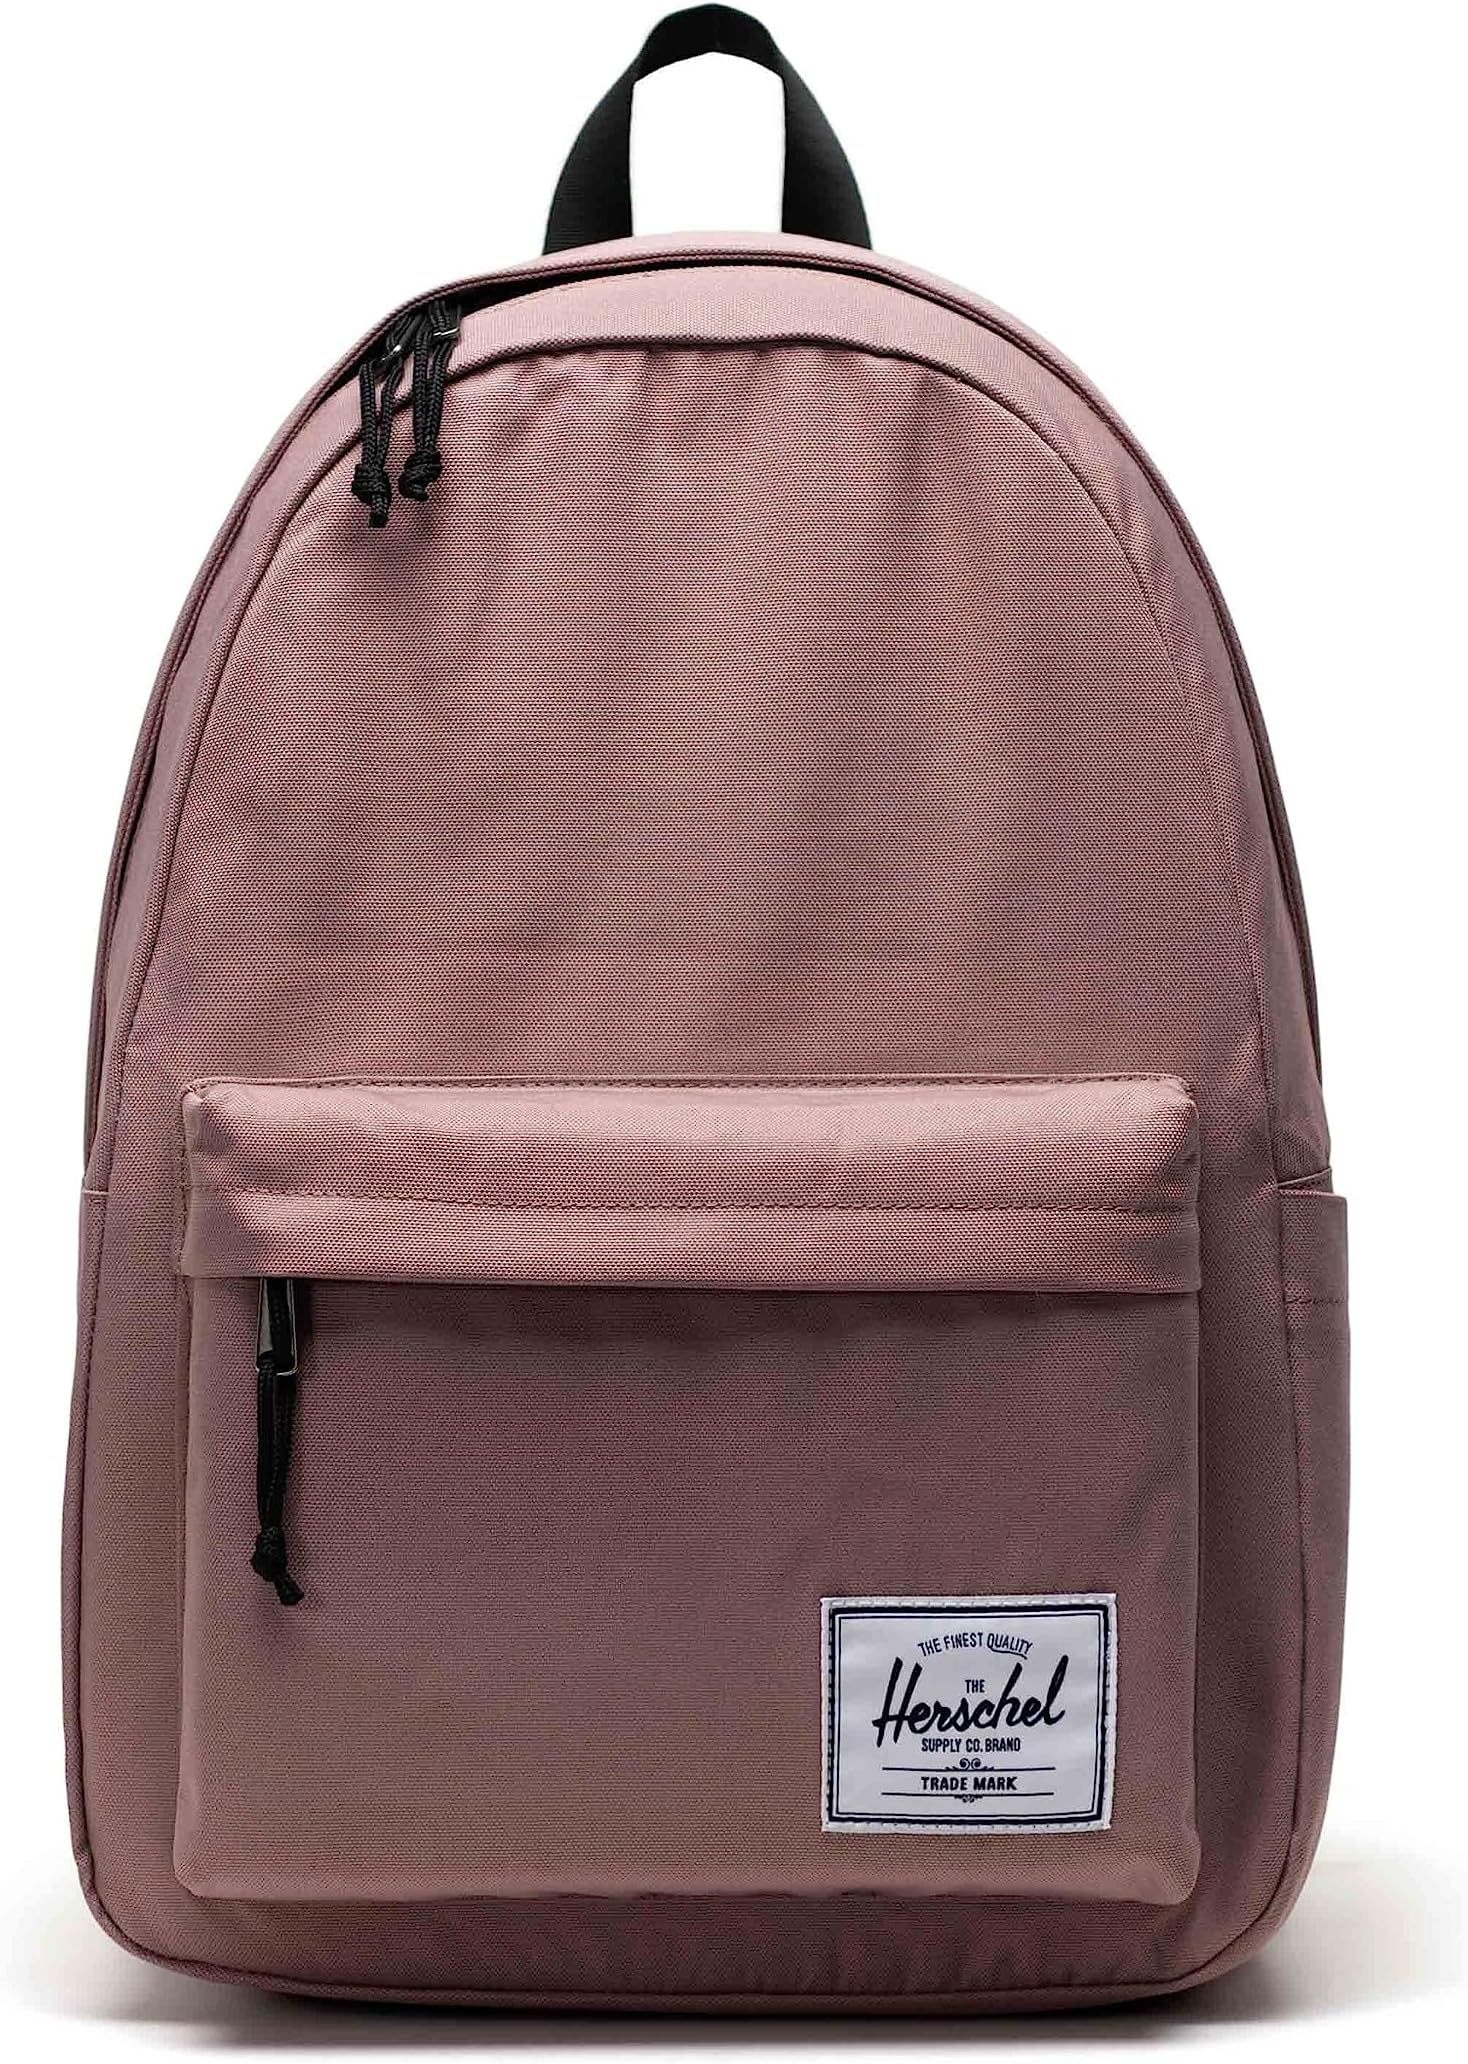 рюкзак retreat backpack herschel supply co цвет ash rose Рюкзак Classic XL Backpack Herschel Supply Co., цвет Ash Rose